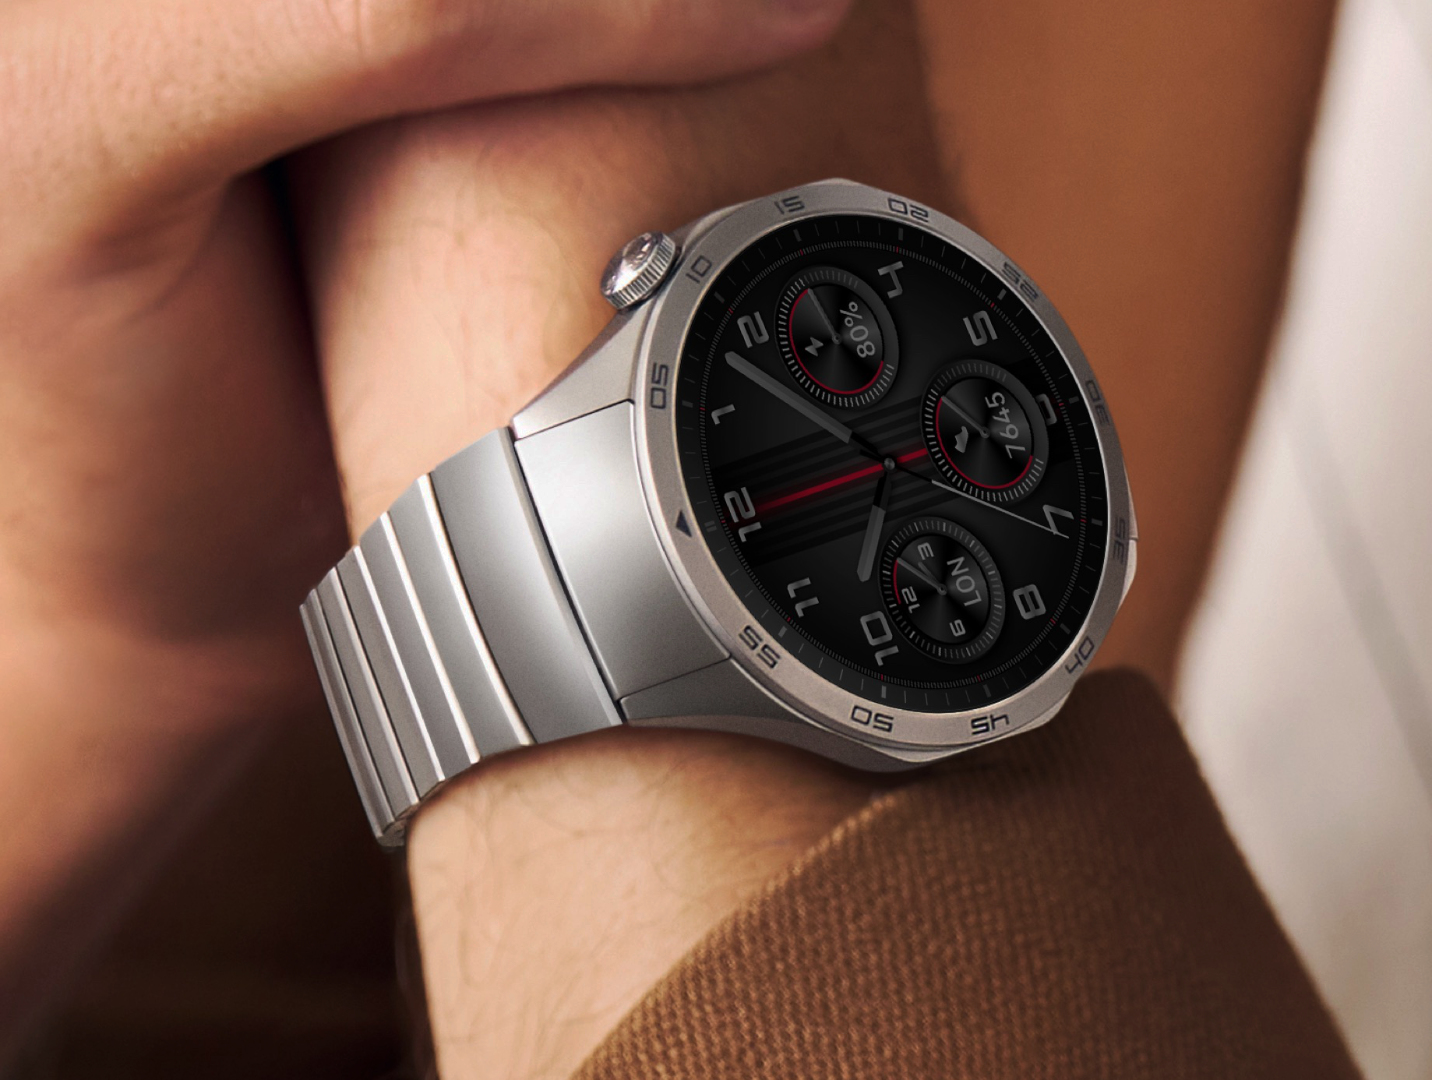 Fresh - Huawei Watch GT • GT 2 • GT 2e • GT 2 Pro • GT 3 / Huawei Watch 3 •  Watch 3 Pro | 🇺🇦 AmazFit, Zepp, Xiaomi, Haylou, Honor, Huawei Watch faces  catalog